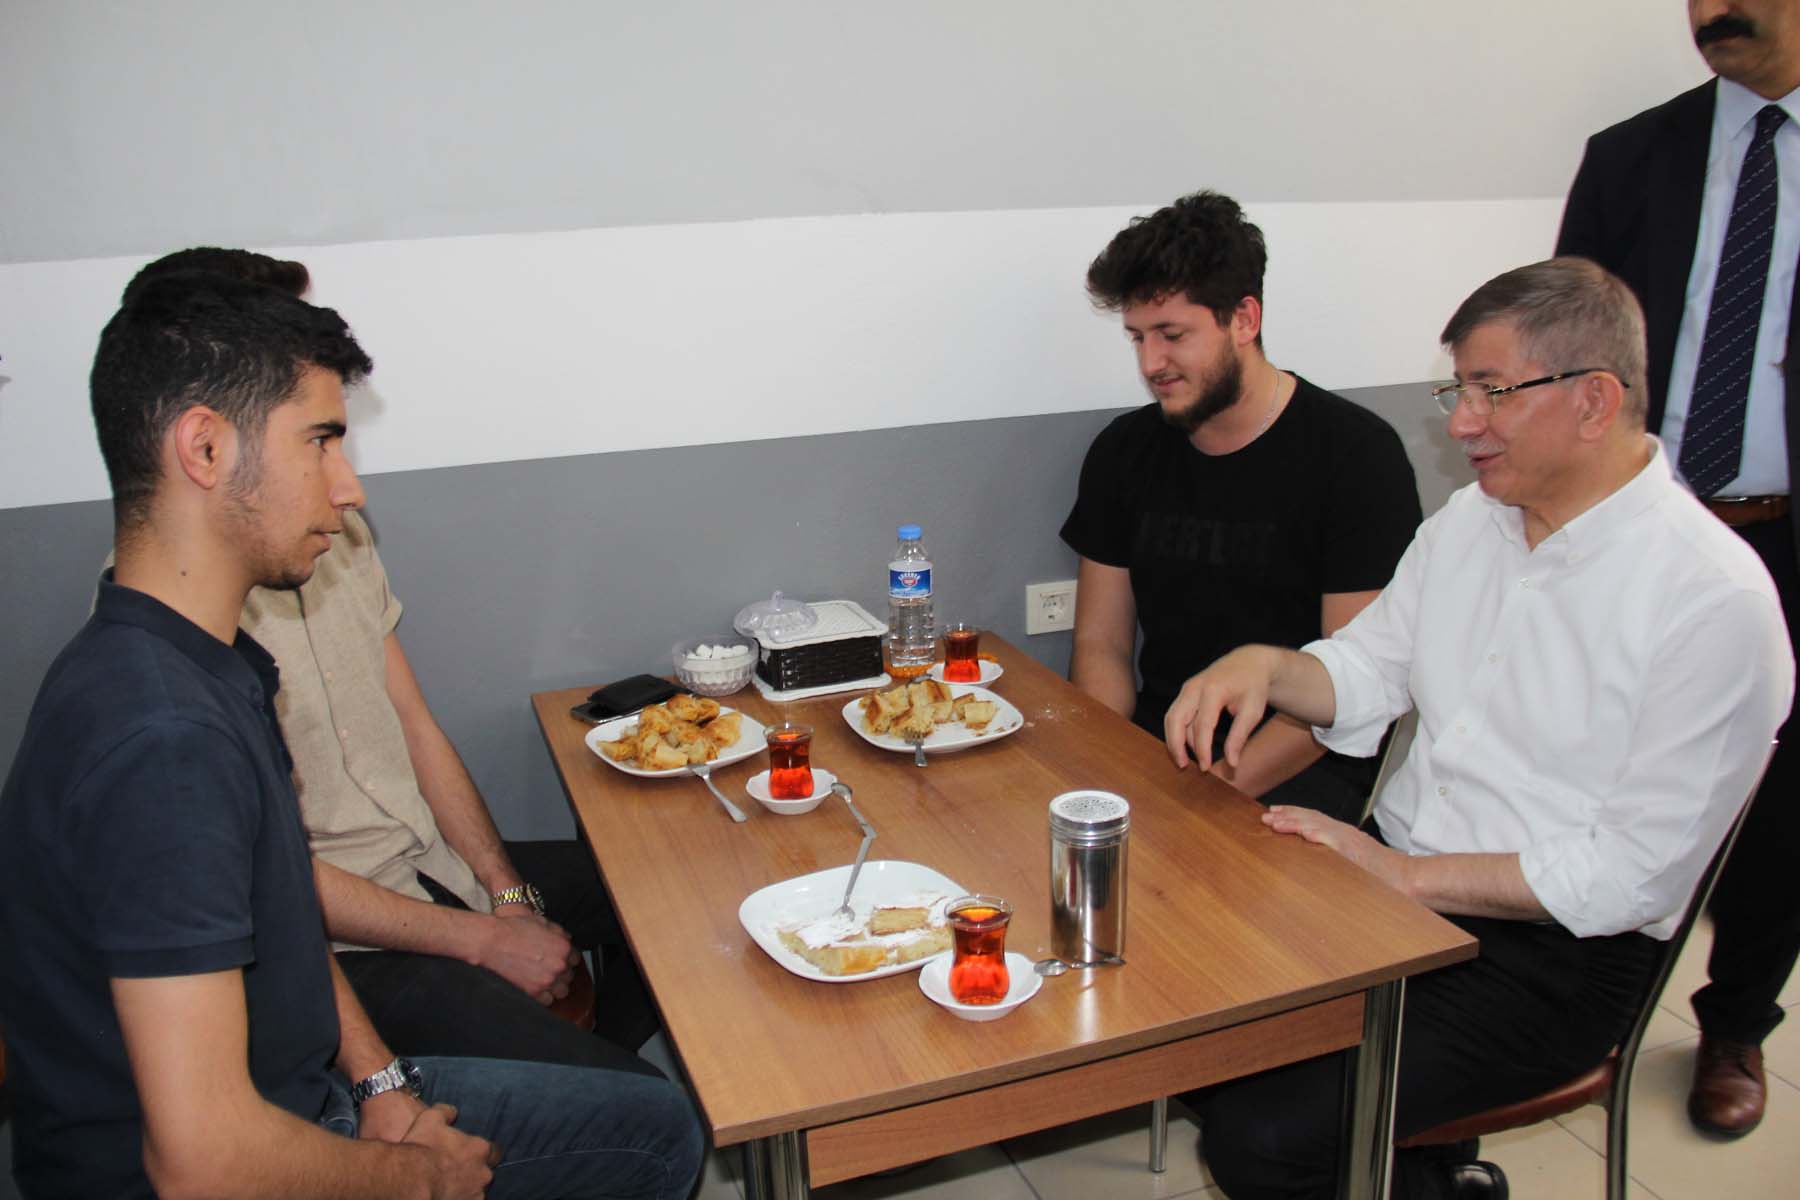 Adıyaman'da vatandaşlarla buluşan Ahmet Davutoğlu tepkiyle karşılandı! Altılı masadan ayrıl çıkışına olay yanıt verdi: Bakarız ona